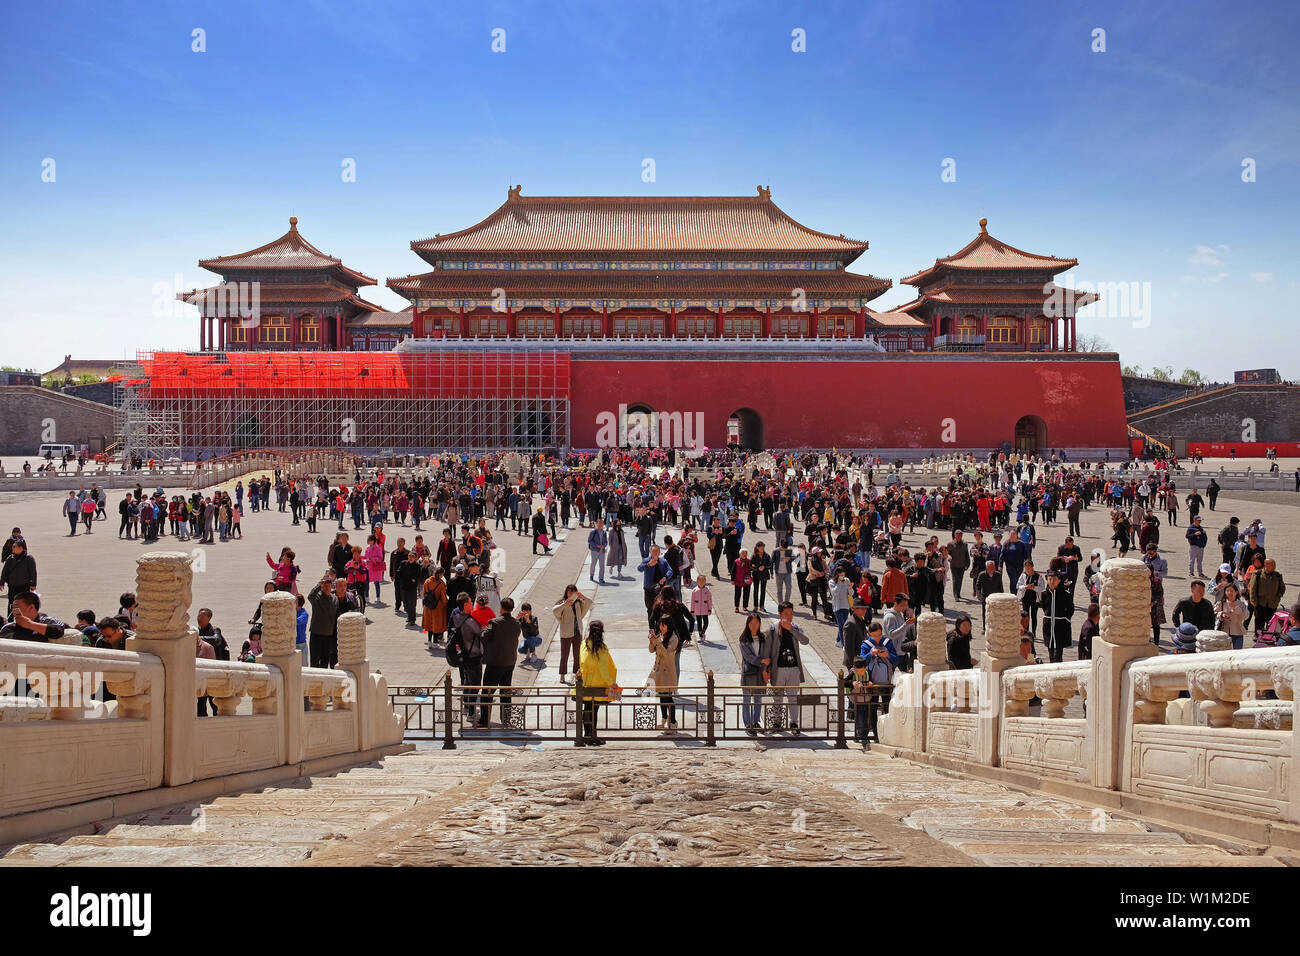 Marmor Muster vor einem überfüllten Platz im Inneren des Palastes Museum in Peking, die auch als die "Verbotene Stadt" bekannt, mit Blick auf ein rotes Tor mit einem braunen Dach Stockfoto